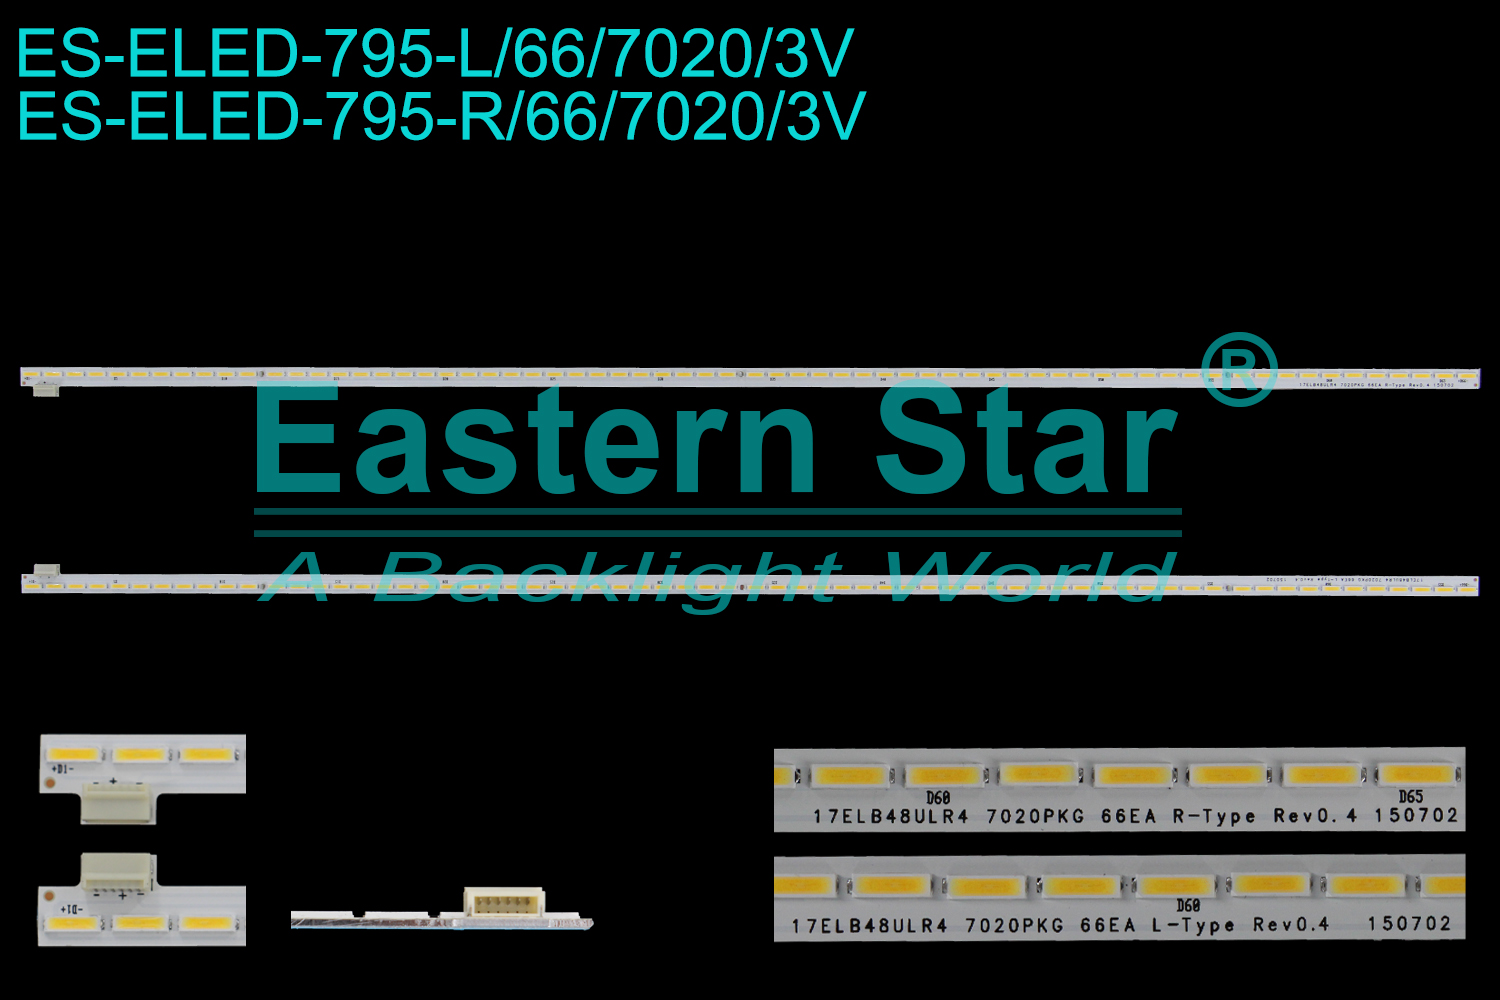 ES-ELED-795 ELED/EDGE TV backlight use for 48'' Vestel 48FB7500 17ELB48ULR4 7020PKG 66EA R-TYPE Rev0.4,17ELB48ULR4 7020PKG 66EA L-TYPE Rev0.4,30090969, 30090970, 35034472 LED STRIPS(2)